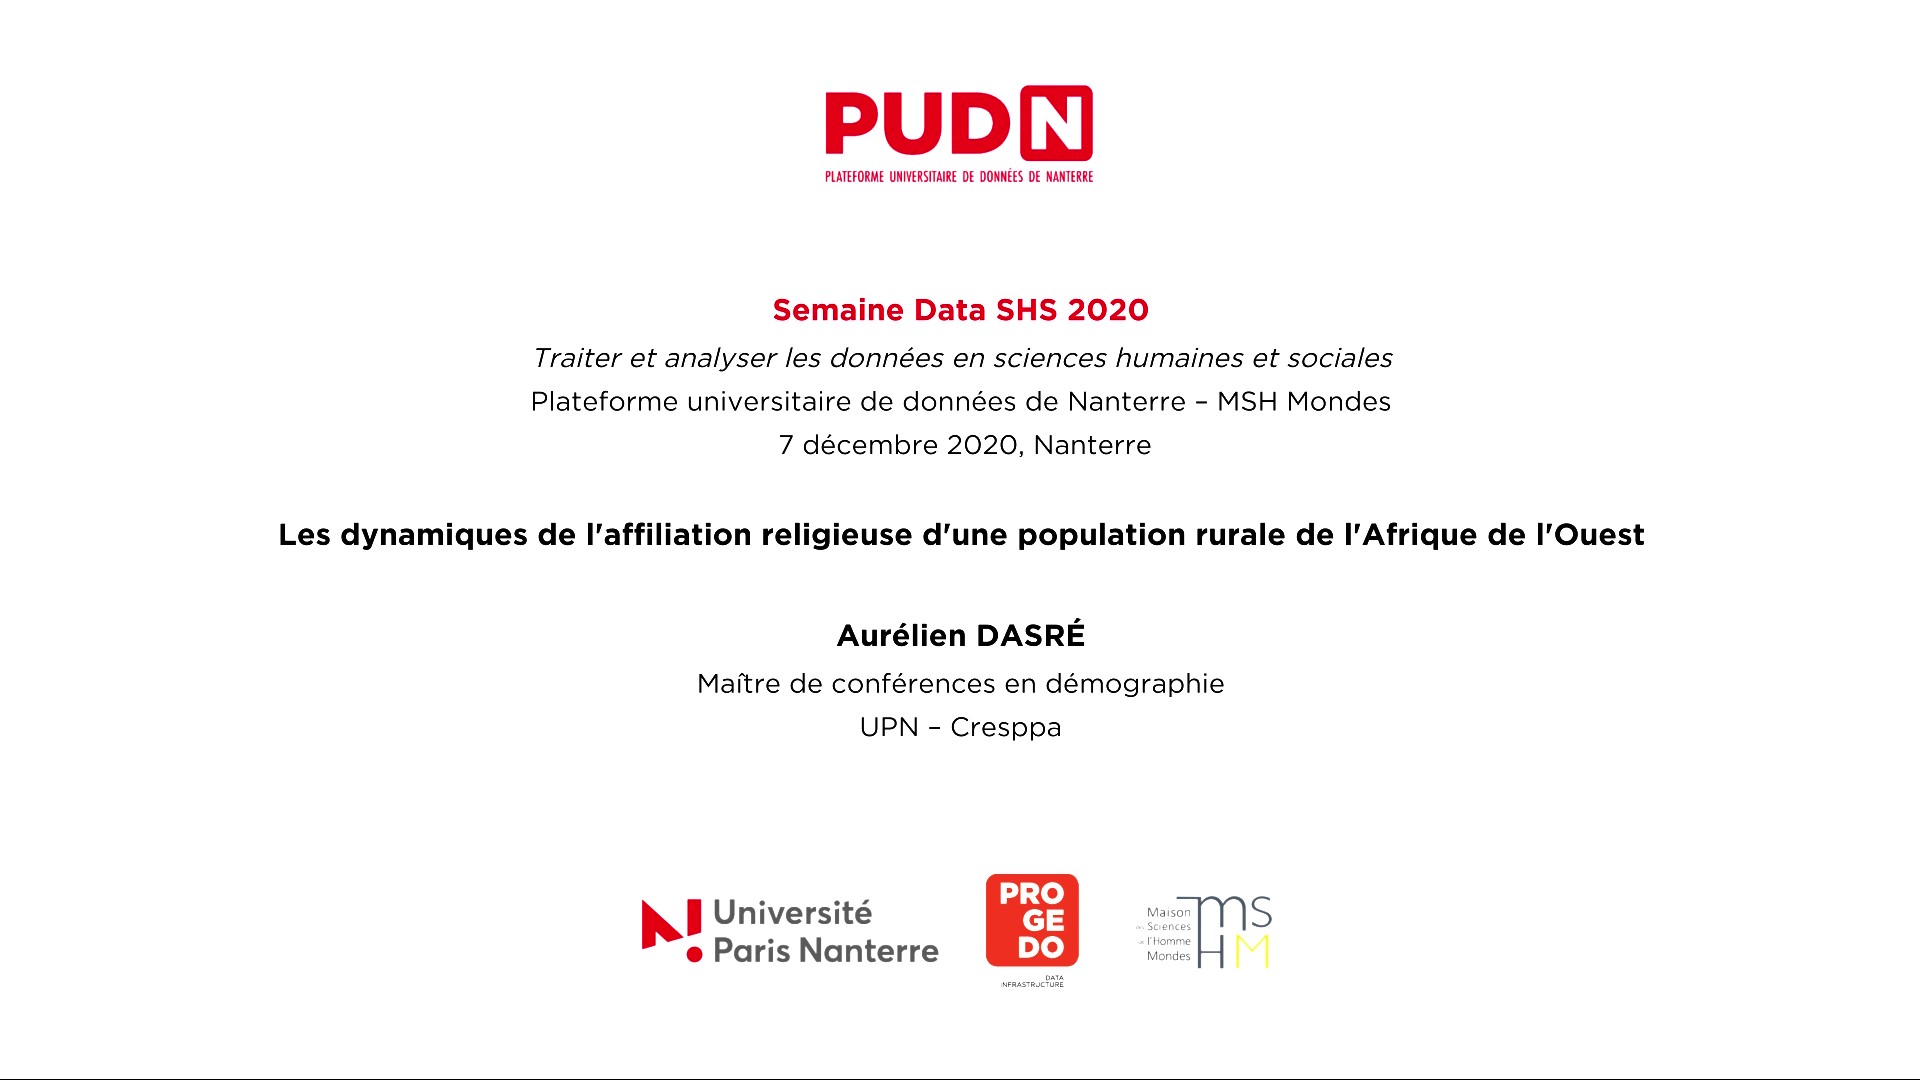 2020 - Les dynamiques de l'affiliation religieuse d'une population rurale de l'Afrique de l'Ouest - PUDN